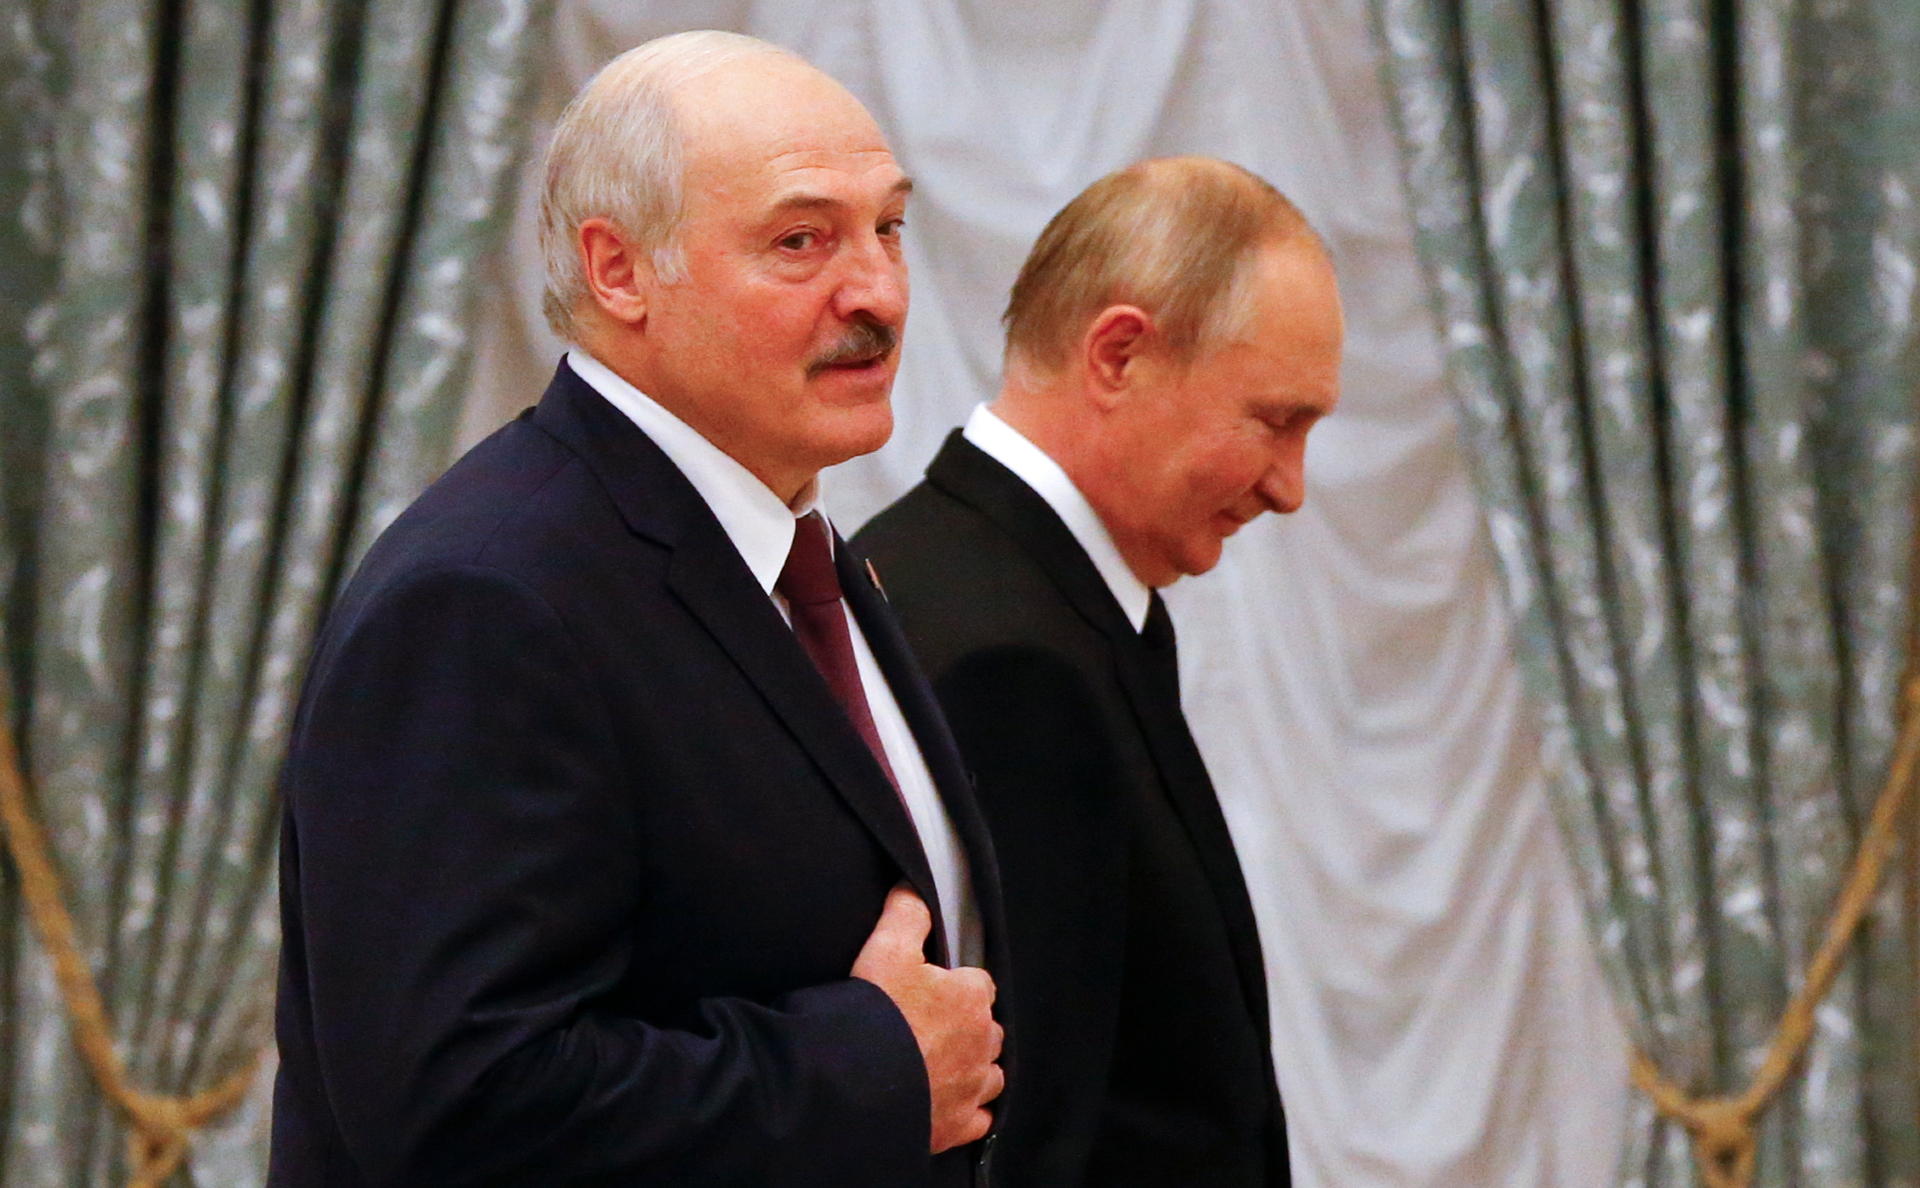 Лукашенко пригрозил союзом с Россией в случае нападения на Белоруссию